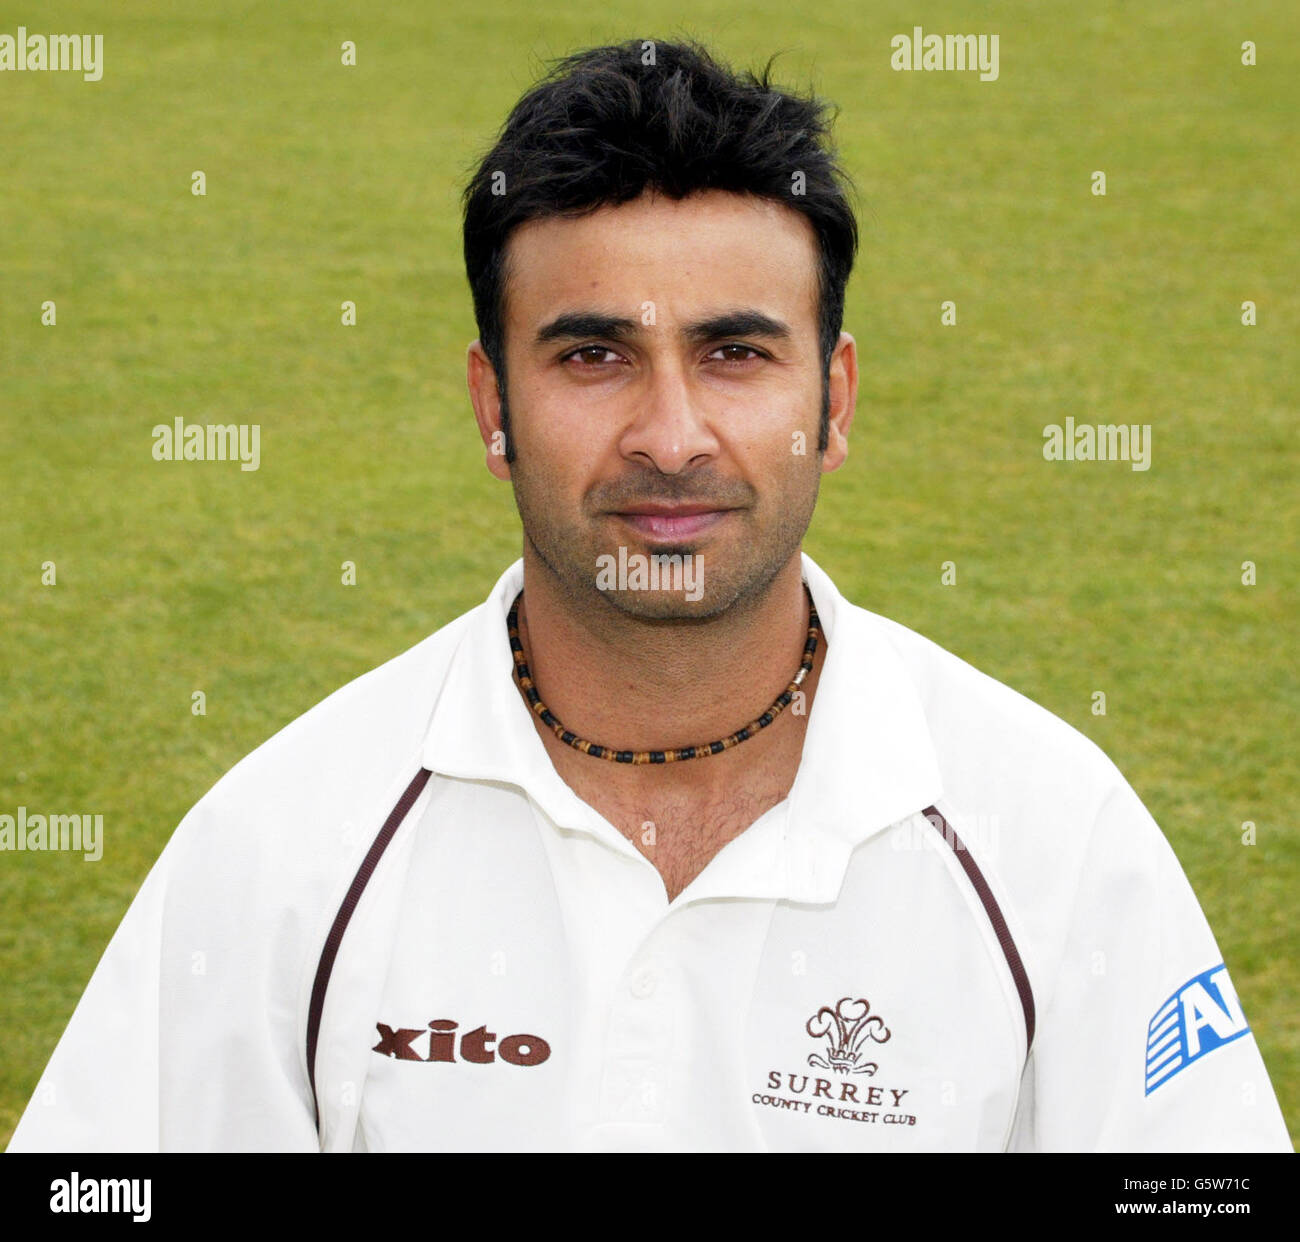 Nadeem Shahid - Surrey. Nadeem Shahid of Surrey County Cricket Club 2002. Stock Photo